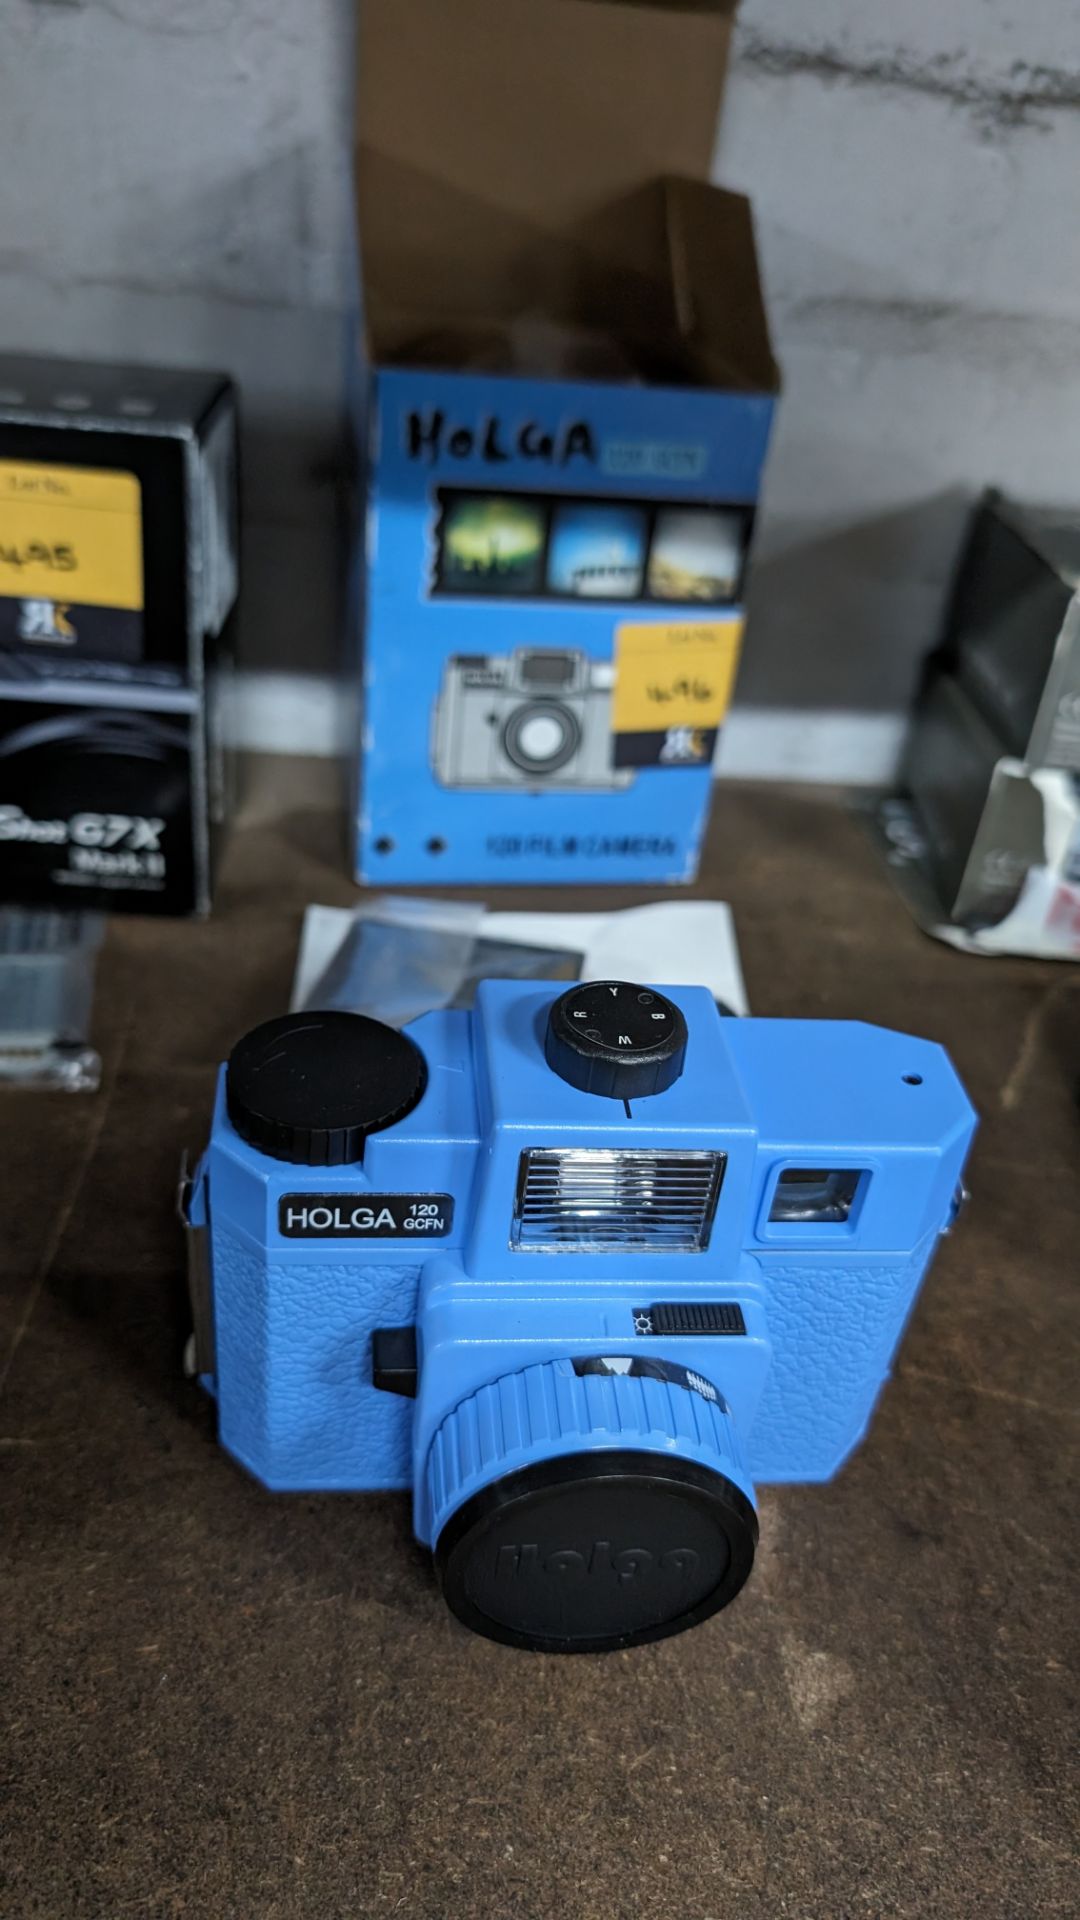 Holga 120 film camera